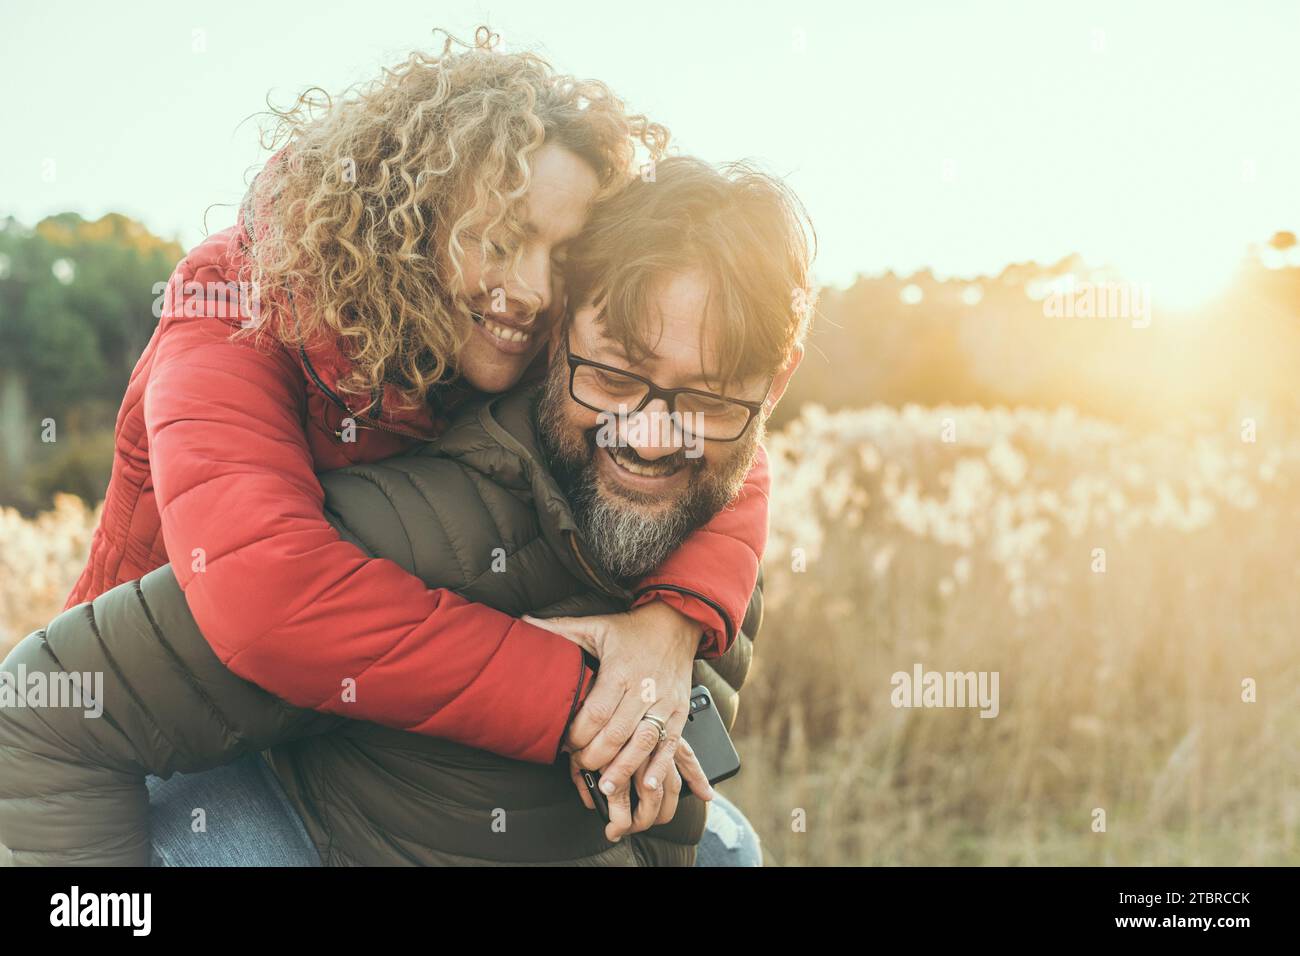 Junges, reifes verliebtes Ehepaar umarmt und lächelt mit romantischem Ausdruck im Gesicht. Ein Mann trägt eine Frau im Huckepack auf dem Rücken. Weibliche Bindung männlich in Outdoor-Freizeitaktivitäten zusammen. Glück Stockfoto